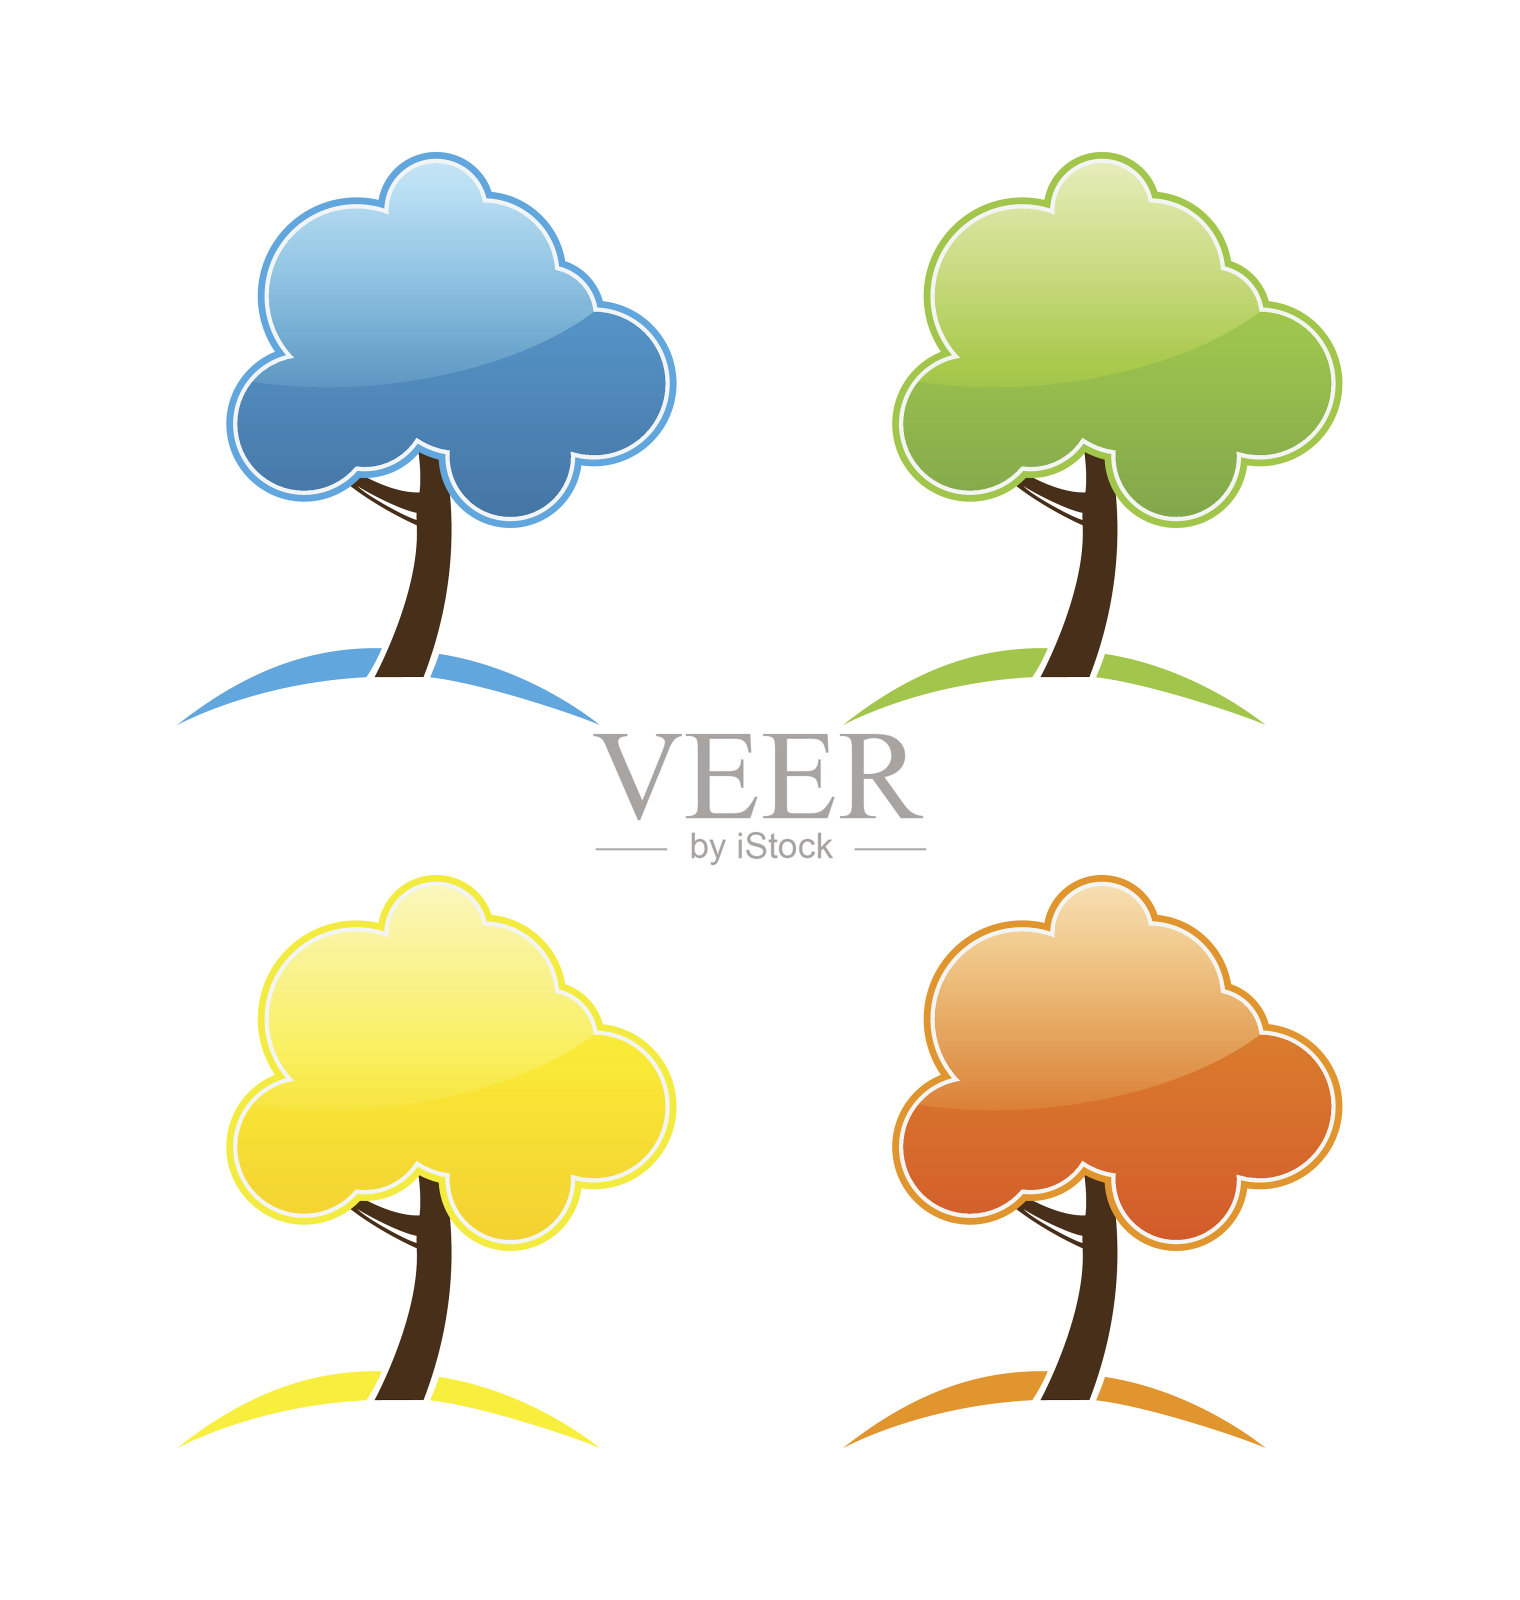 四个季节的标志与树插画图片素材